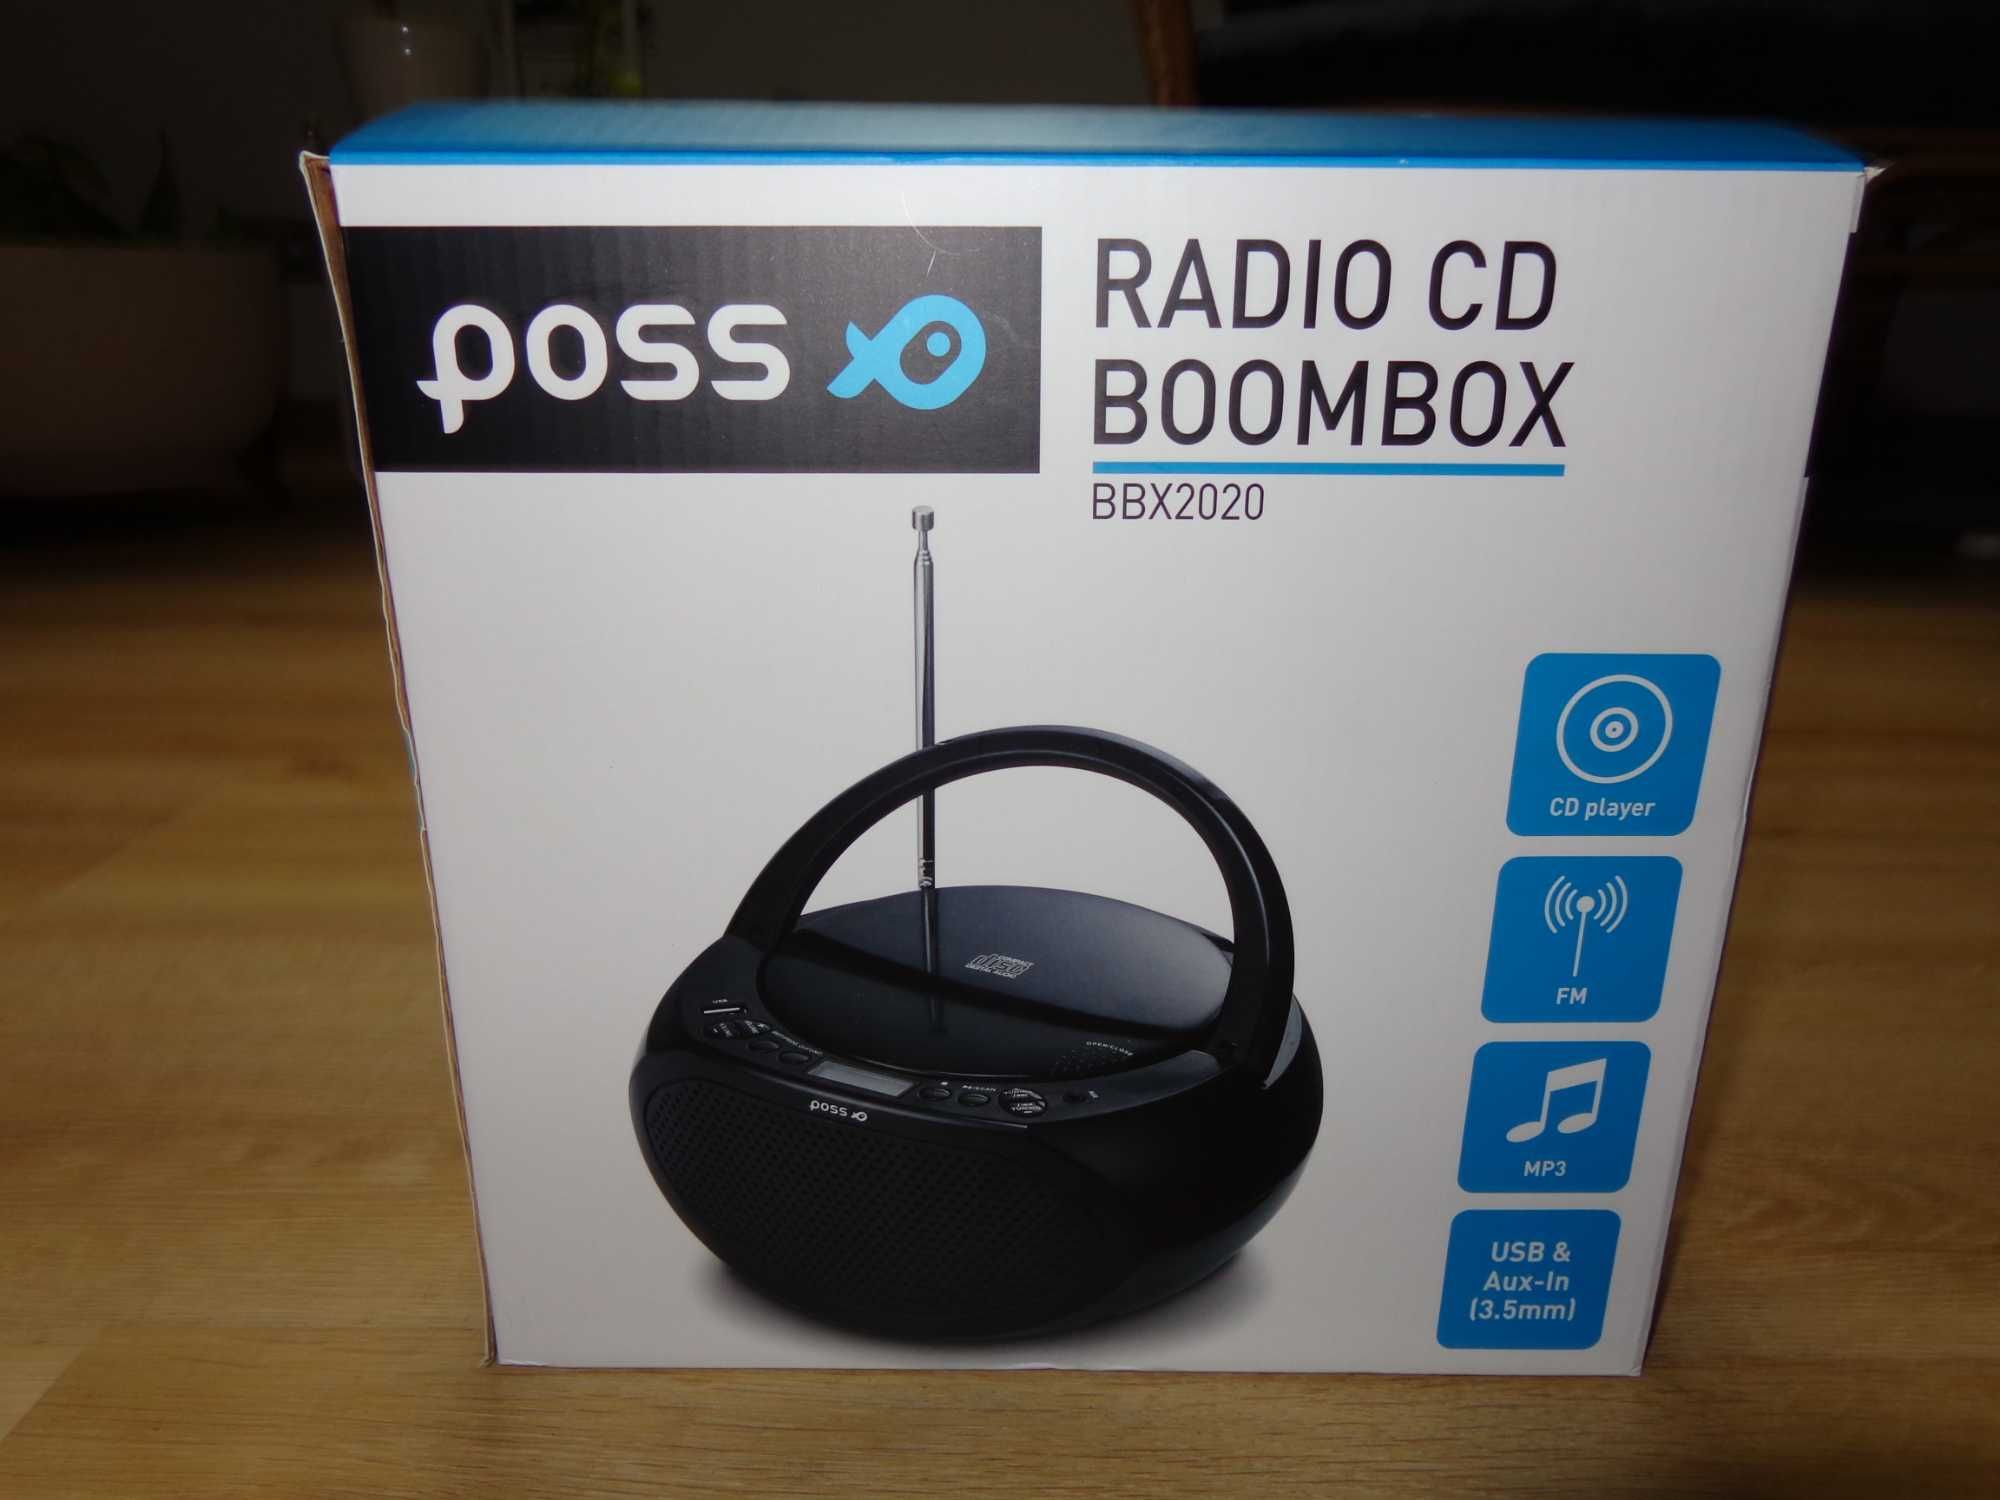 Radioodtwarzacz CD Boombox Poss BBX2020